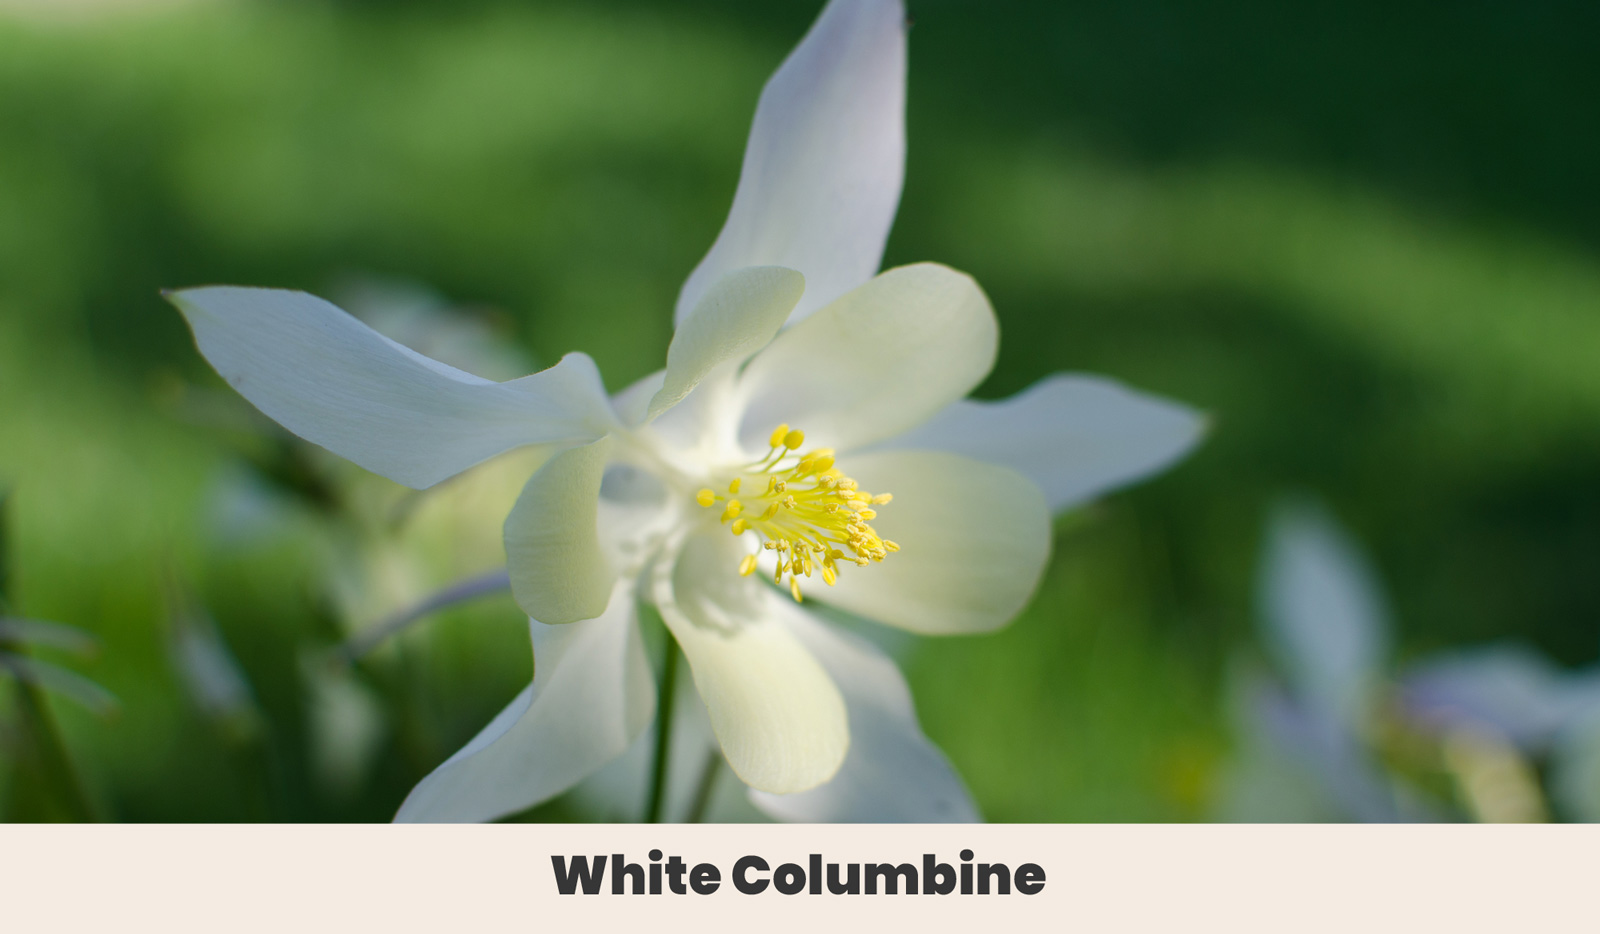 White Columbine